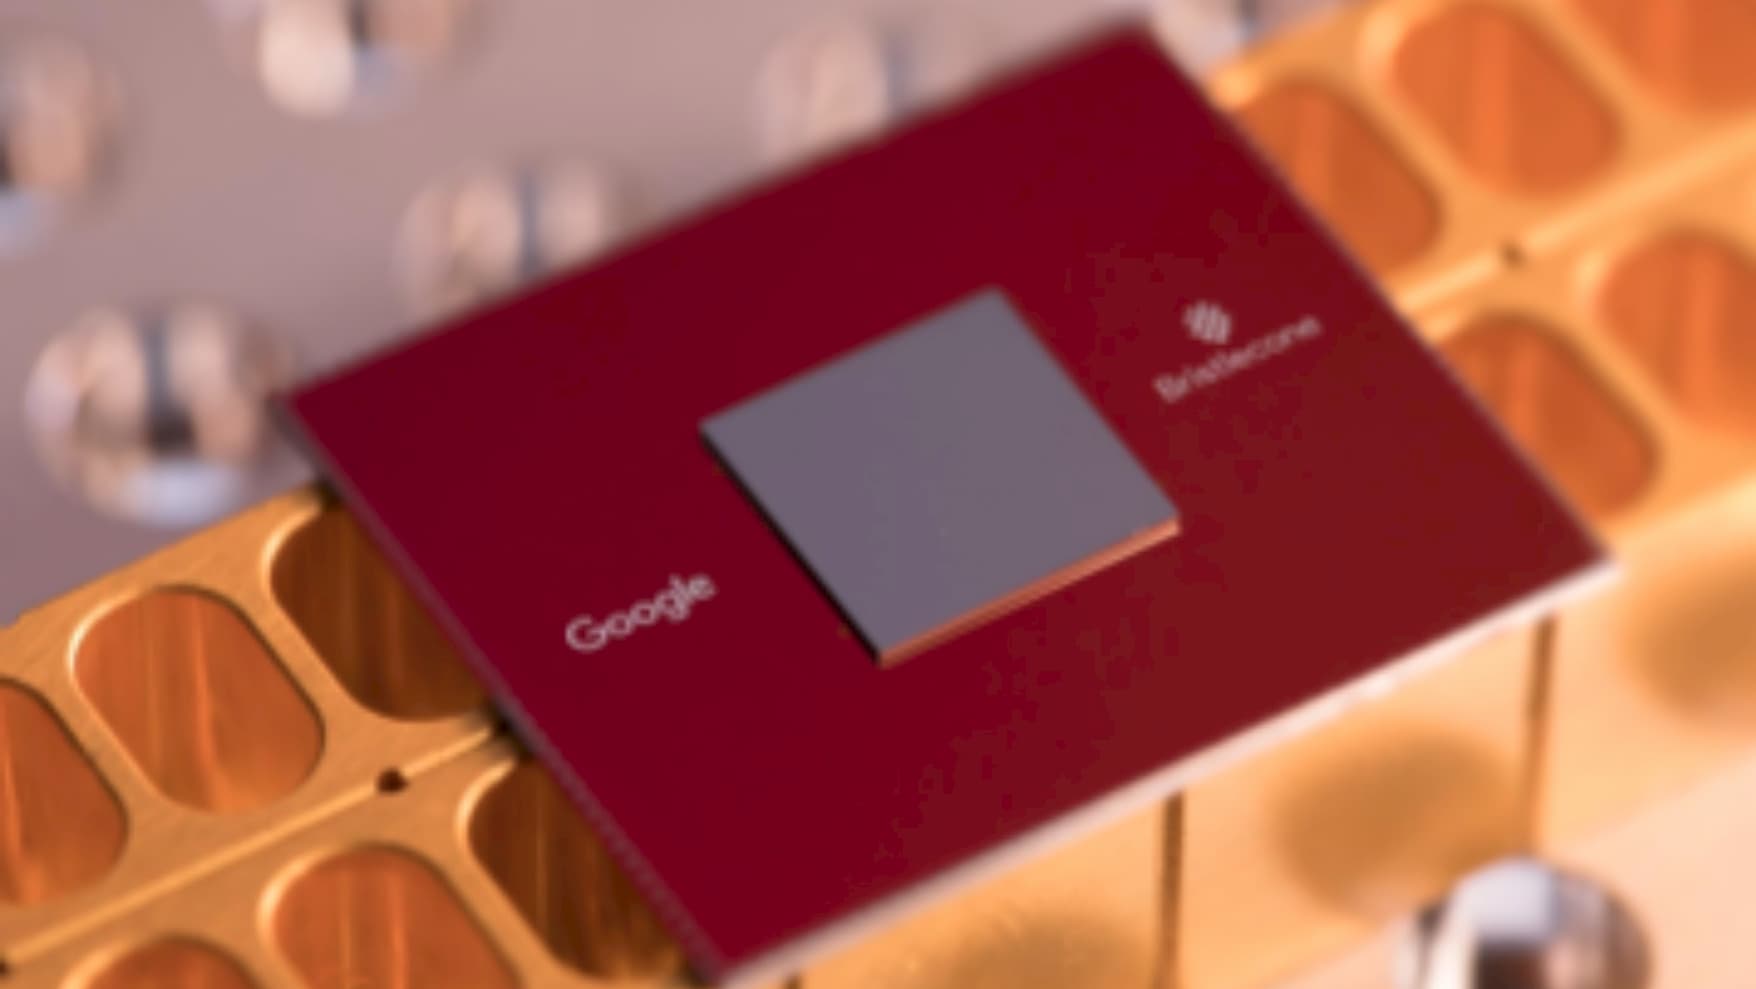 Chip vermelho com o processador quântico Bristlecone e o logo do Google.